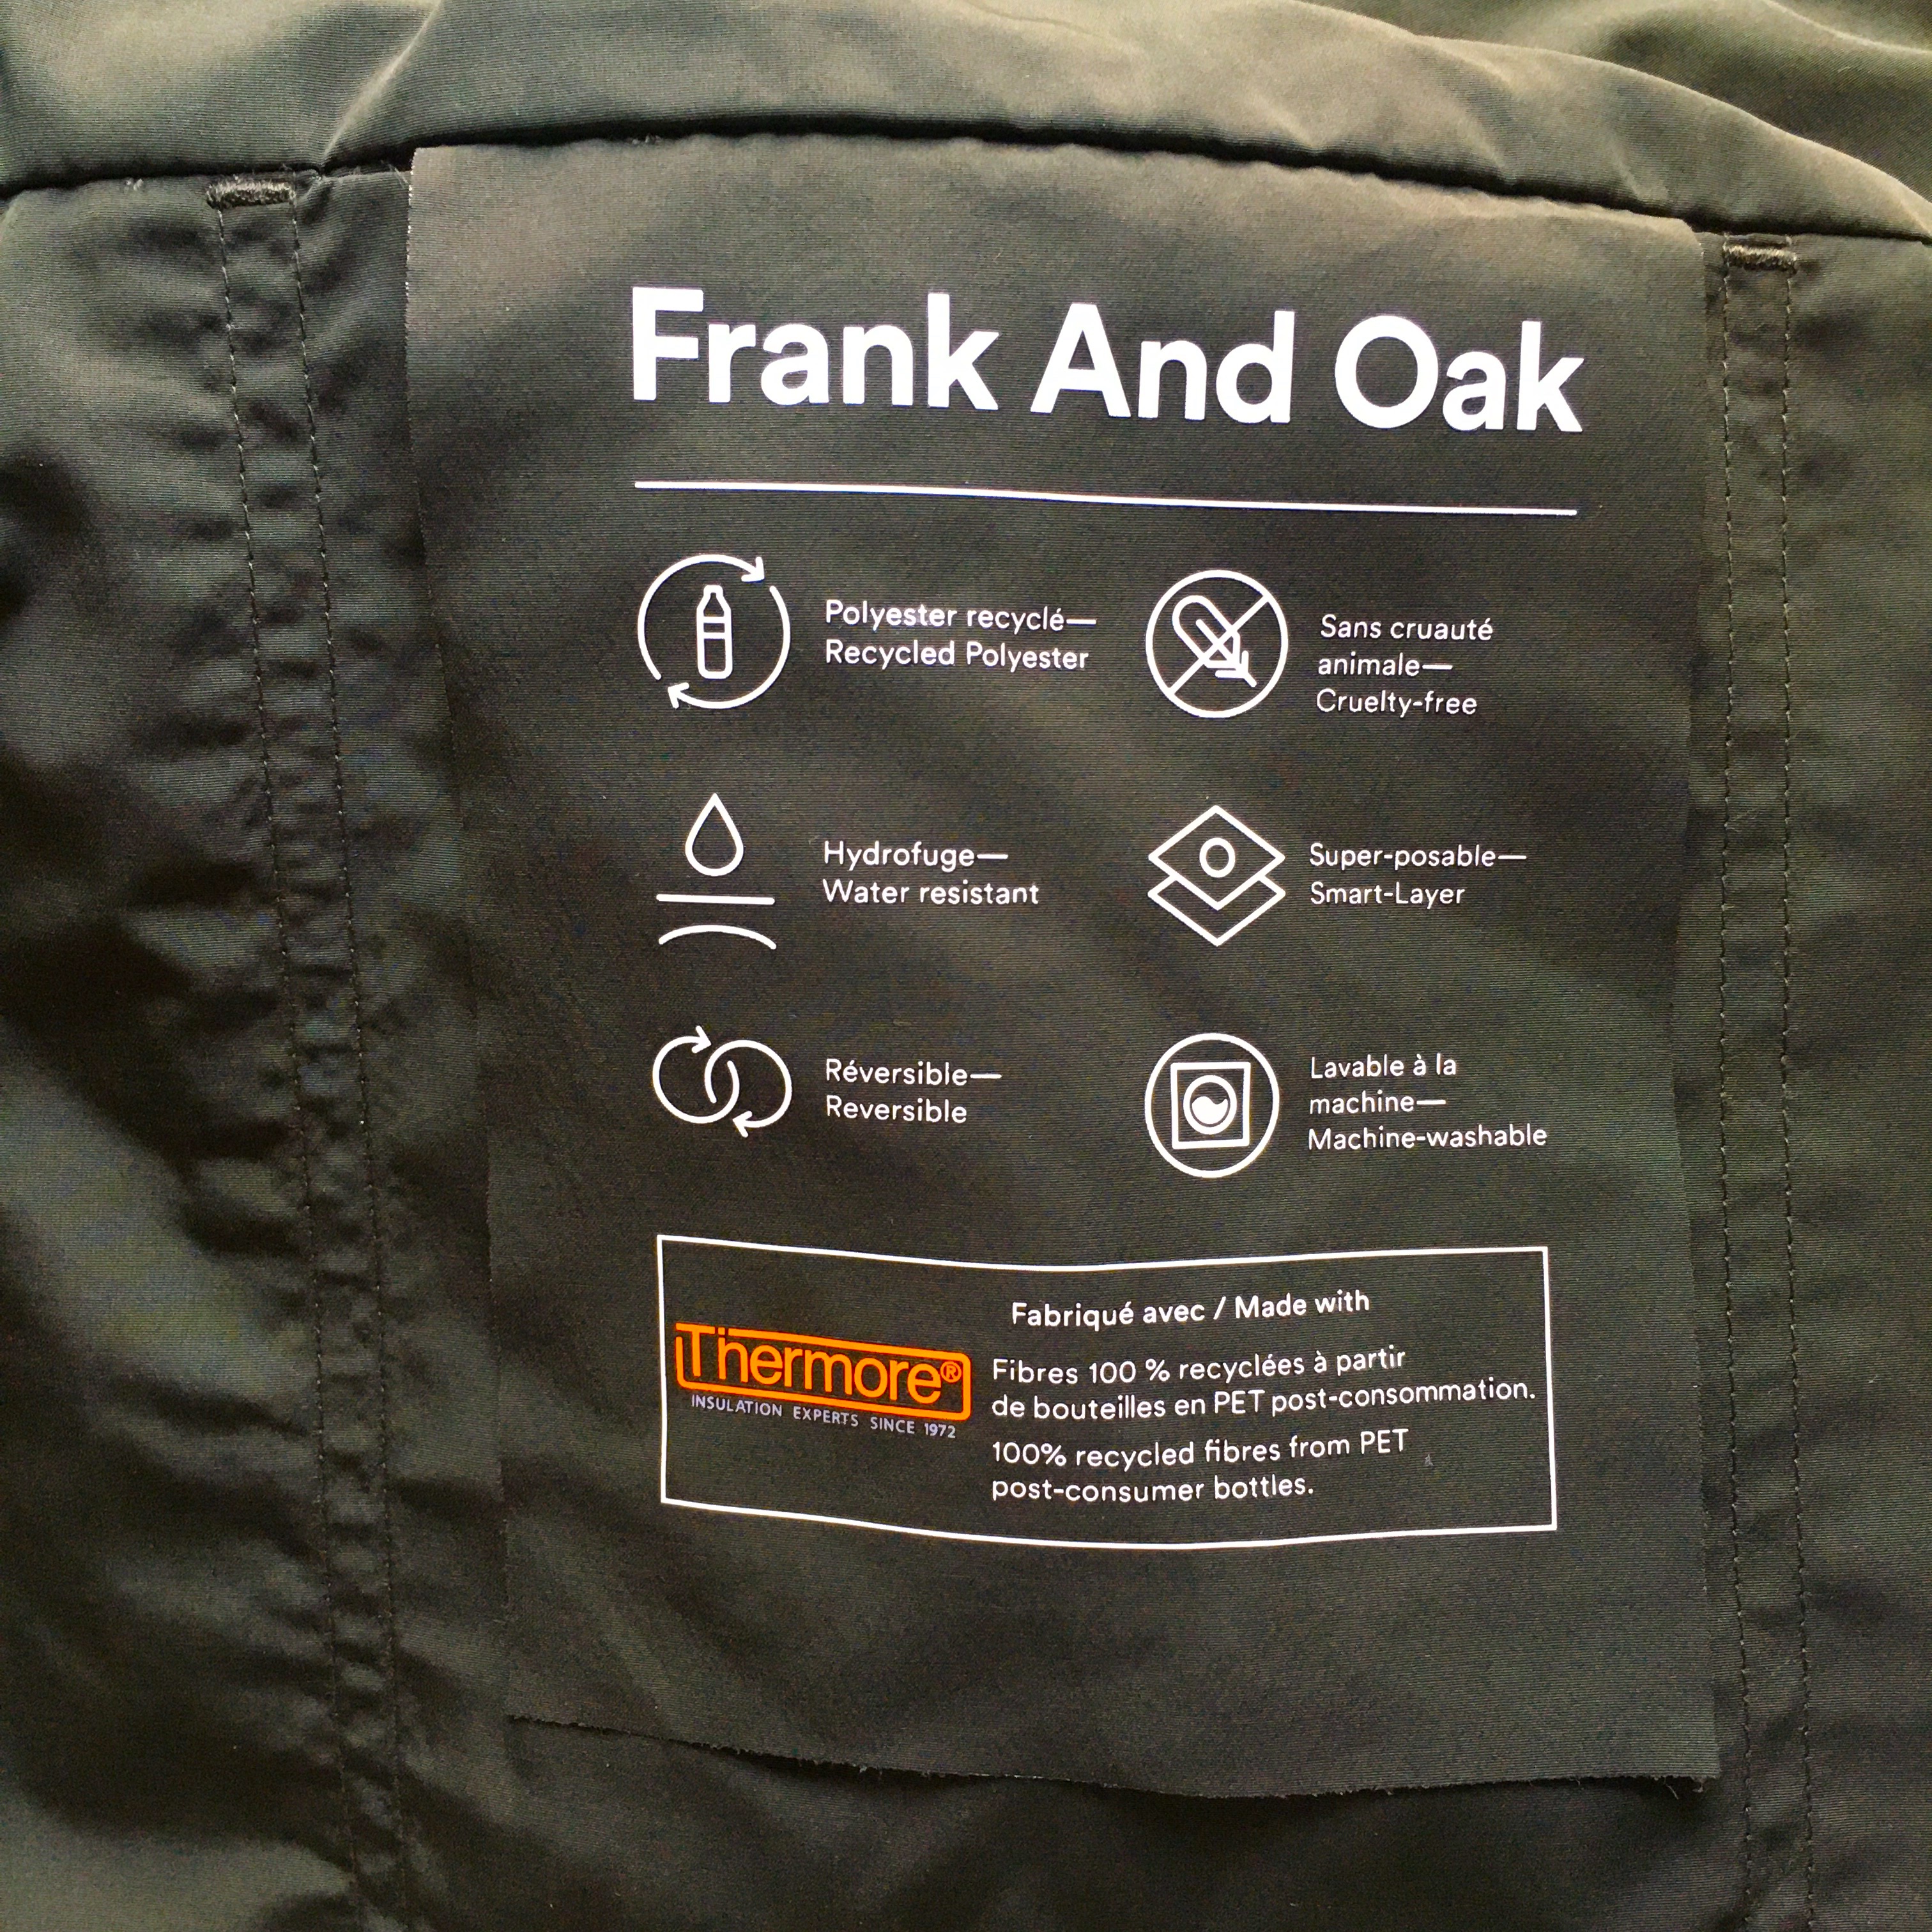 Frank and Oak October 2020